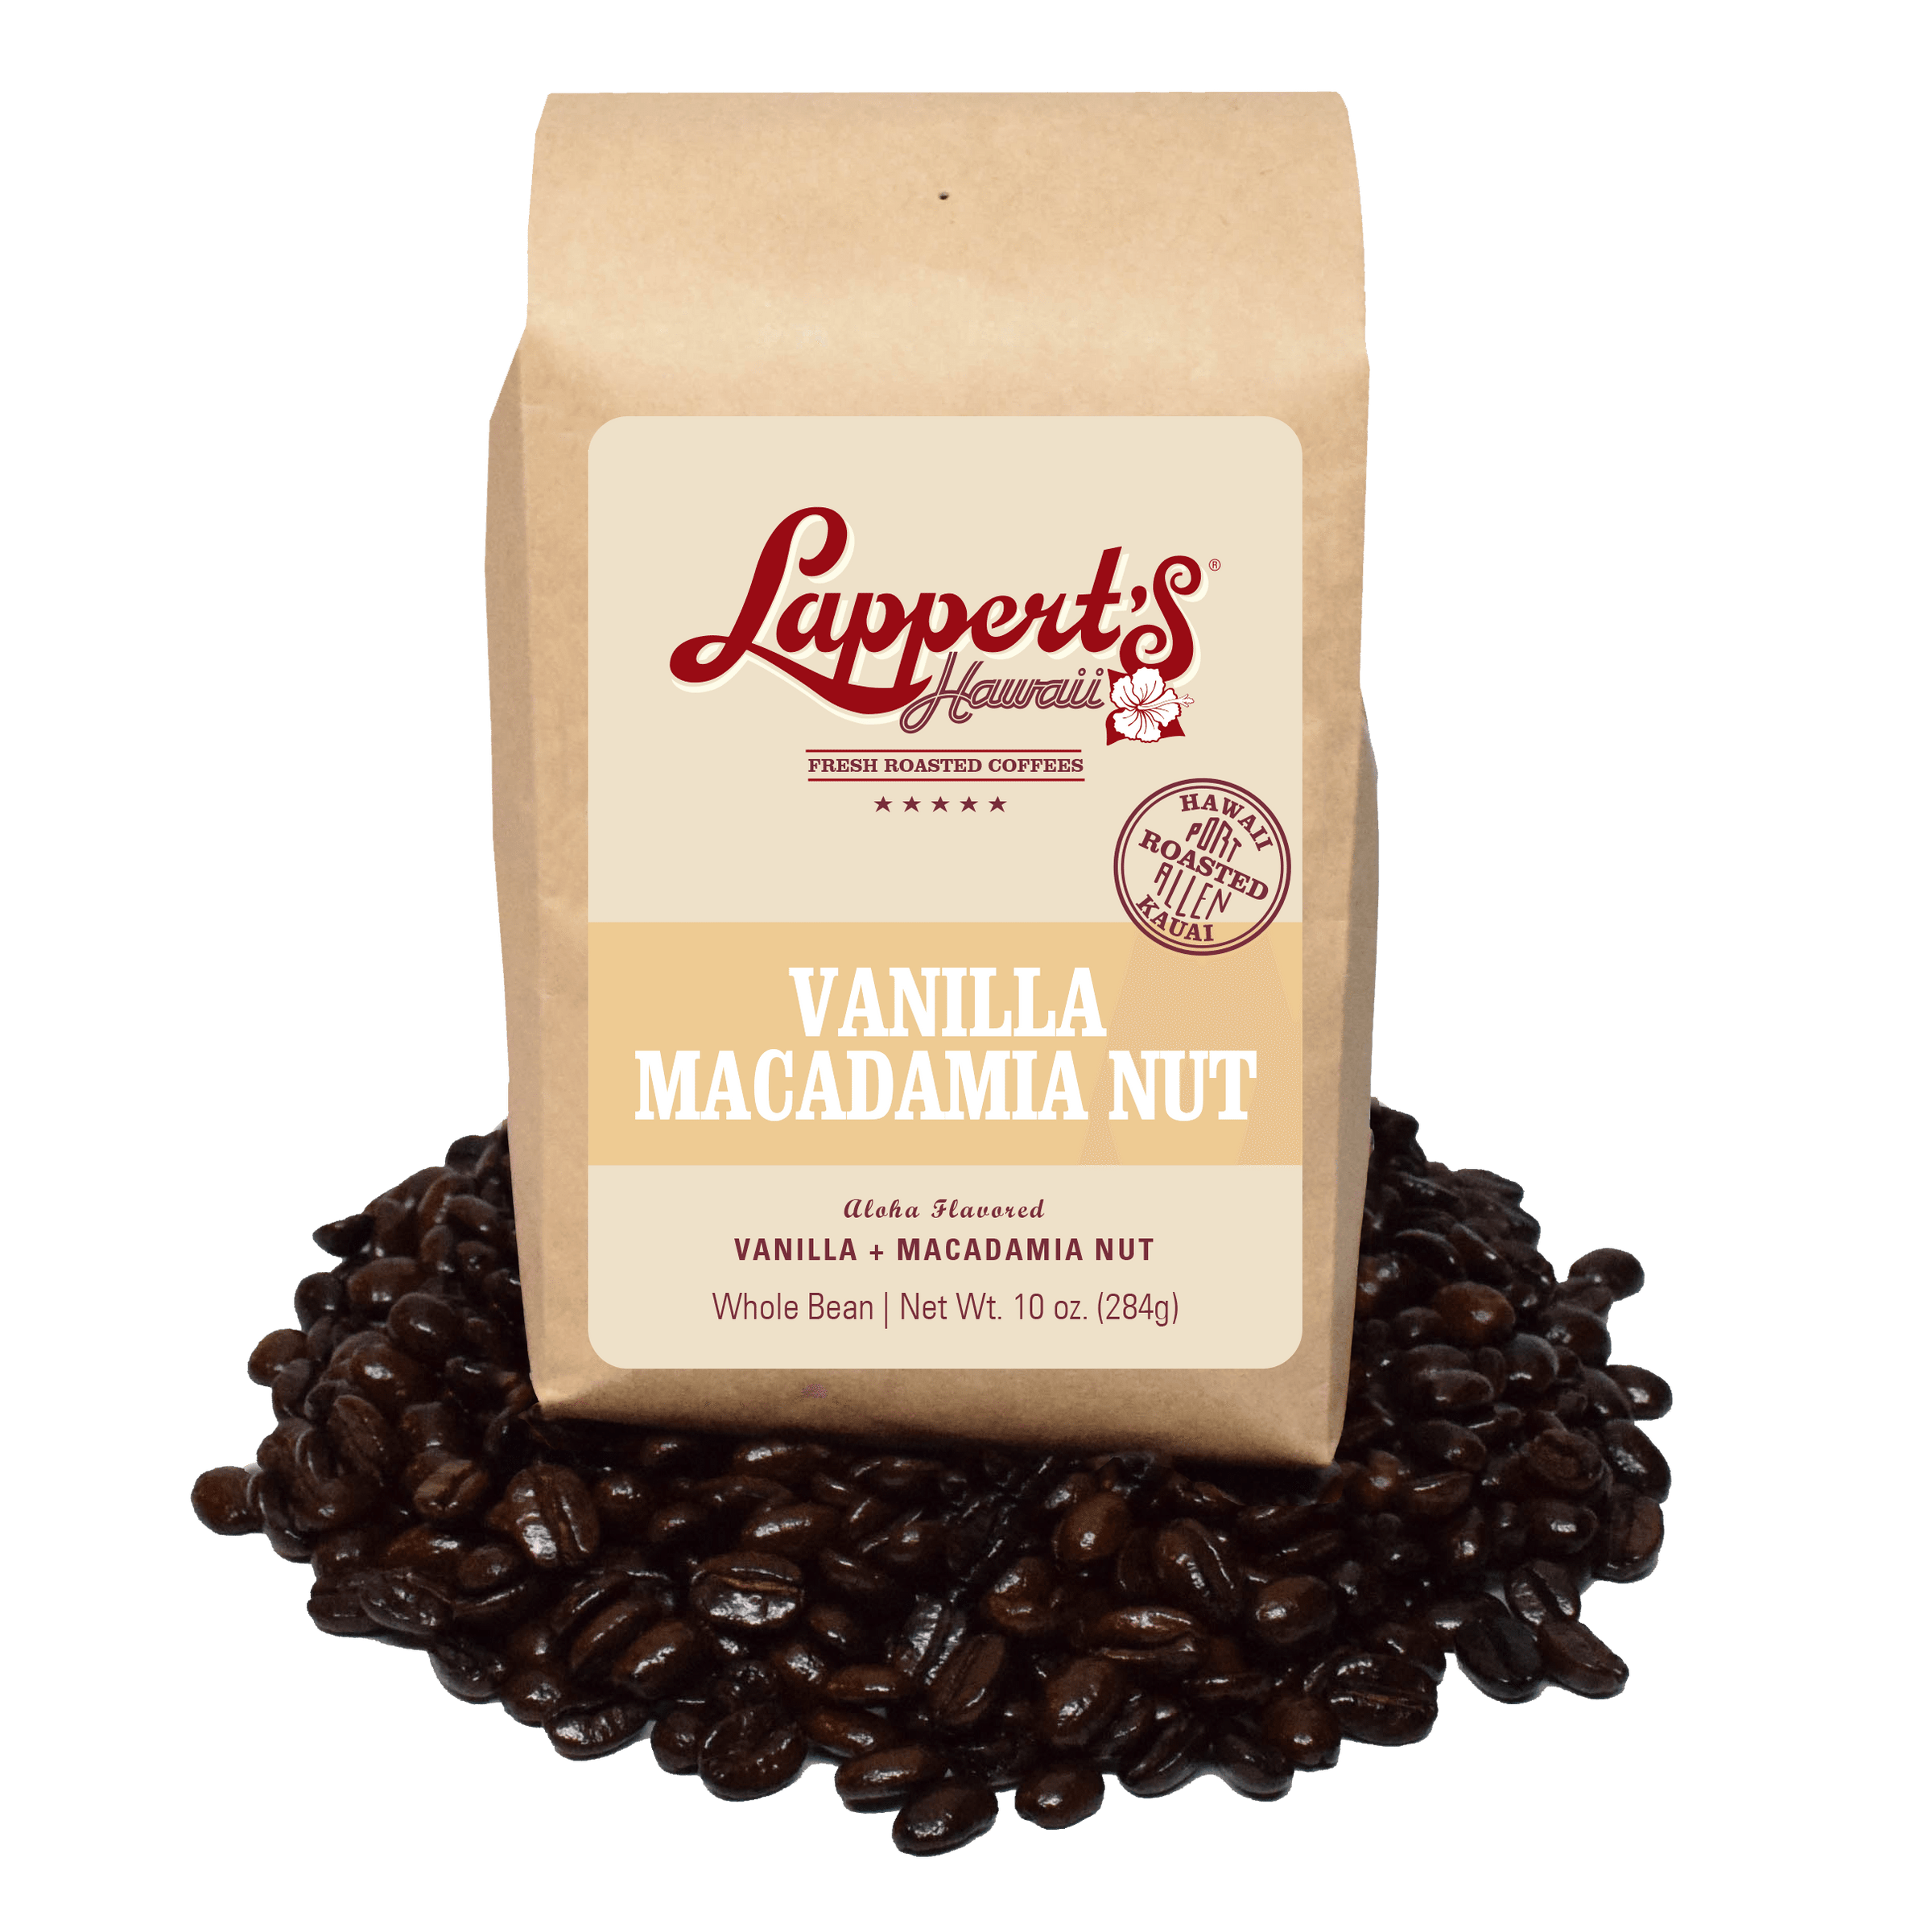 L'Espresso saveur Vanille Macadamia Nespresso® x 10 – Columbus